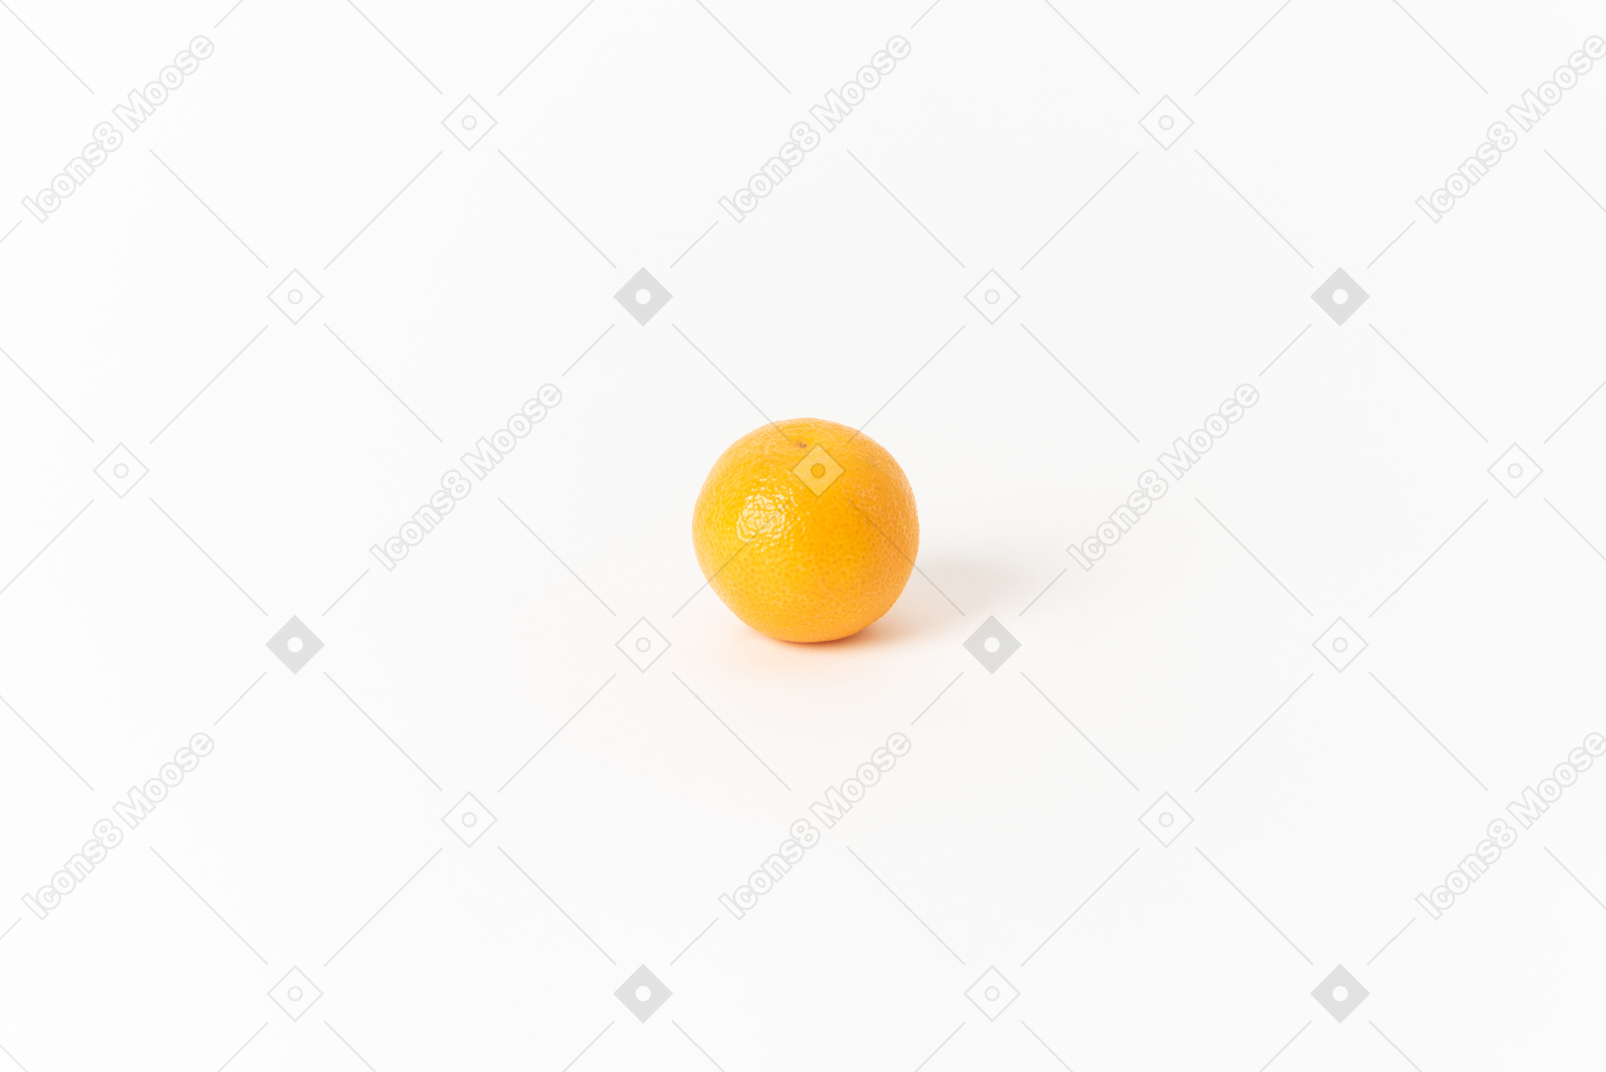 橙子是世界上最受欢迎的水果之一